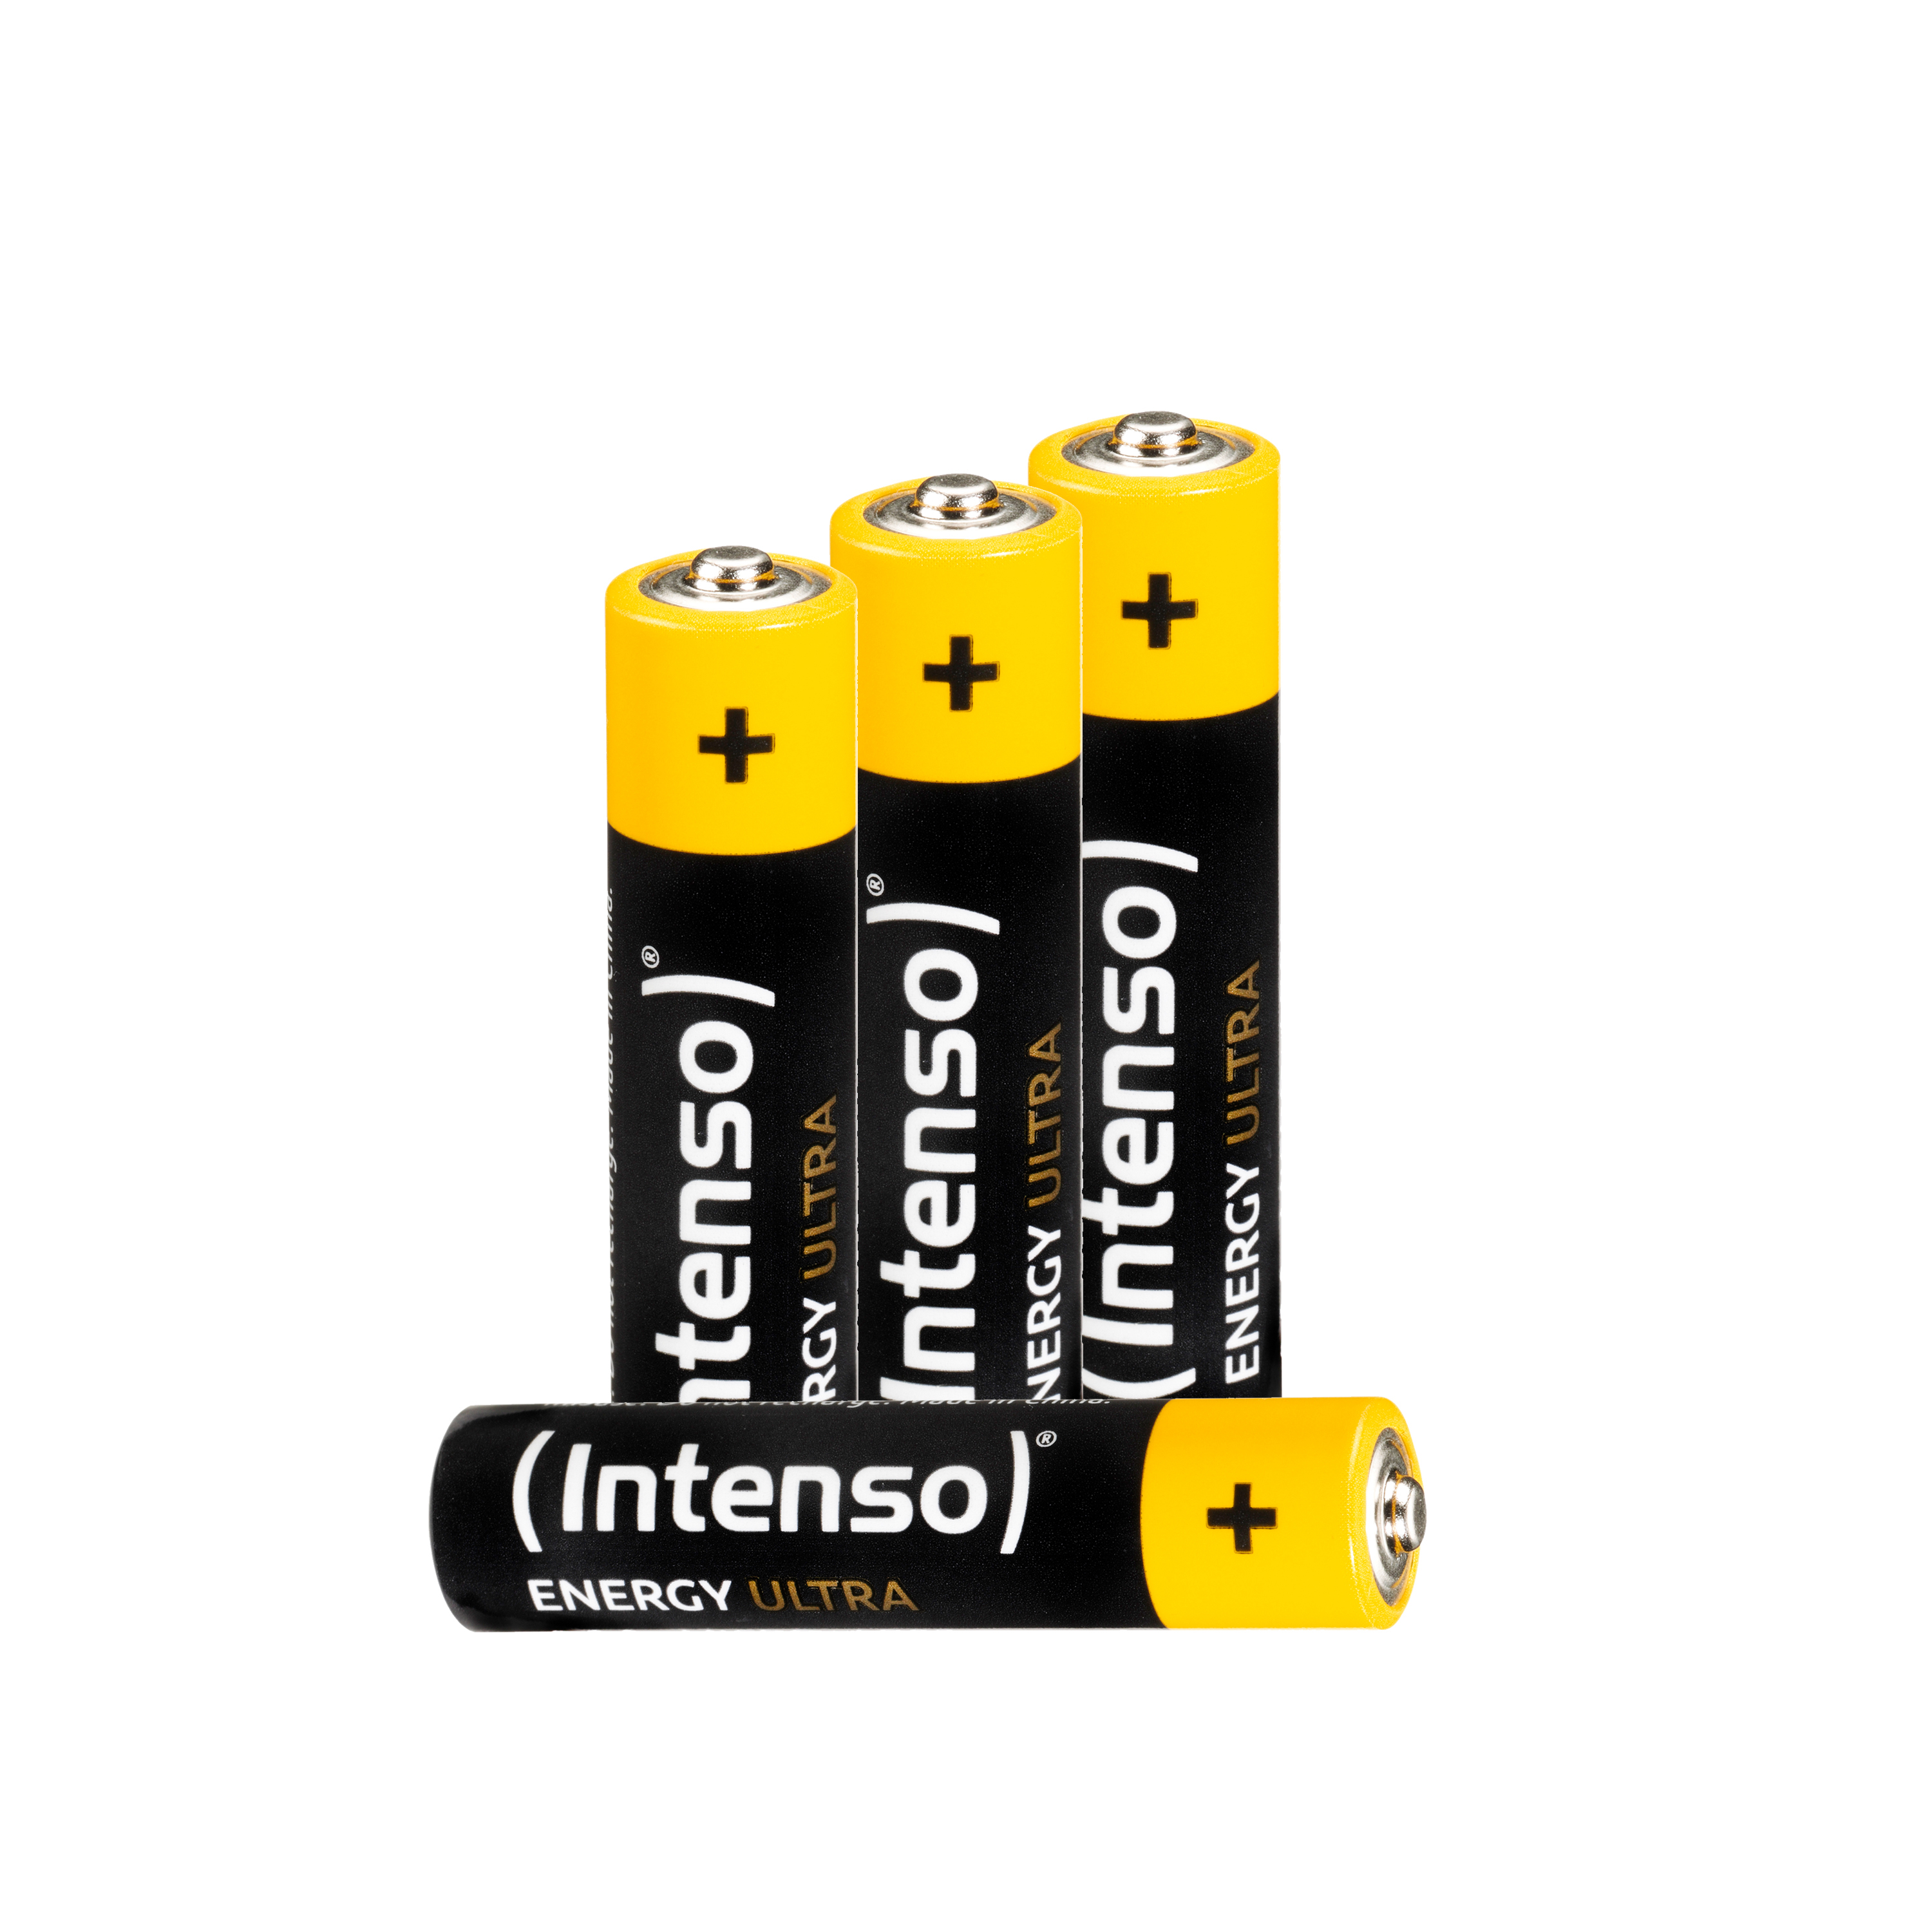 INTENSO Energy Ultra LR03 (Quecksilberfrei), LR03, Manganese Micro Batterie AAA AAA, Pack 4er Alkaline